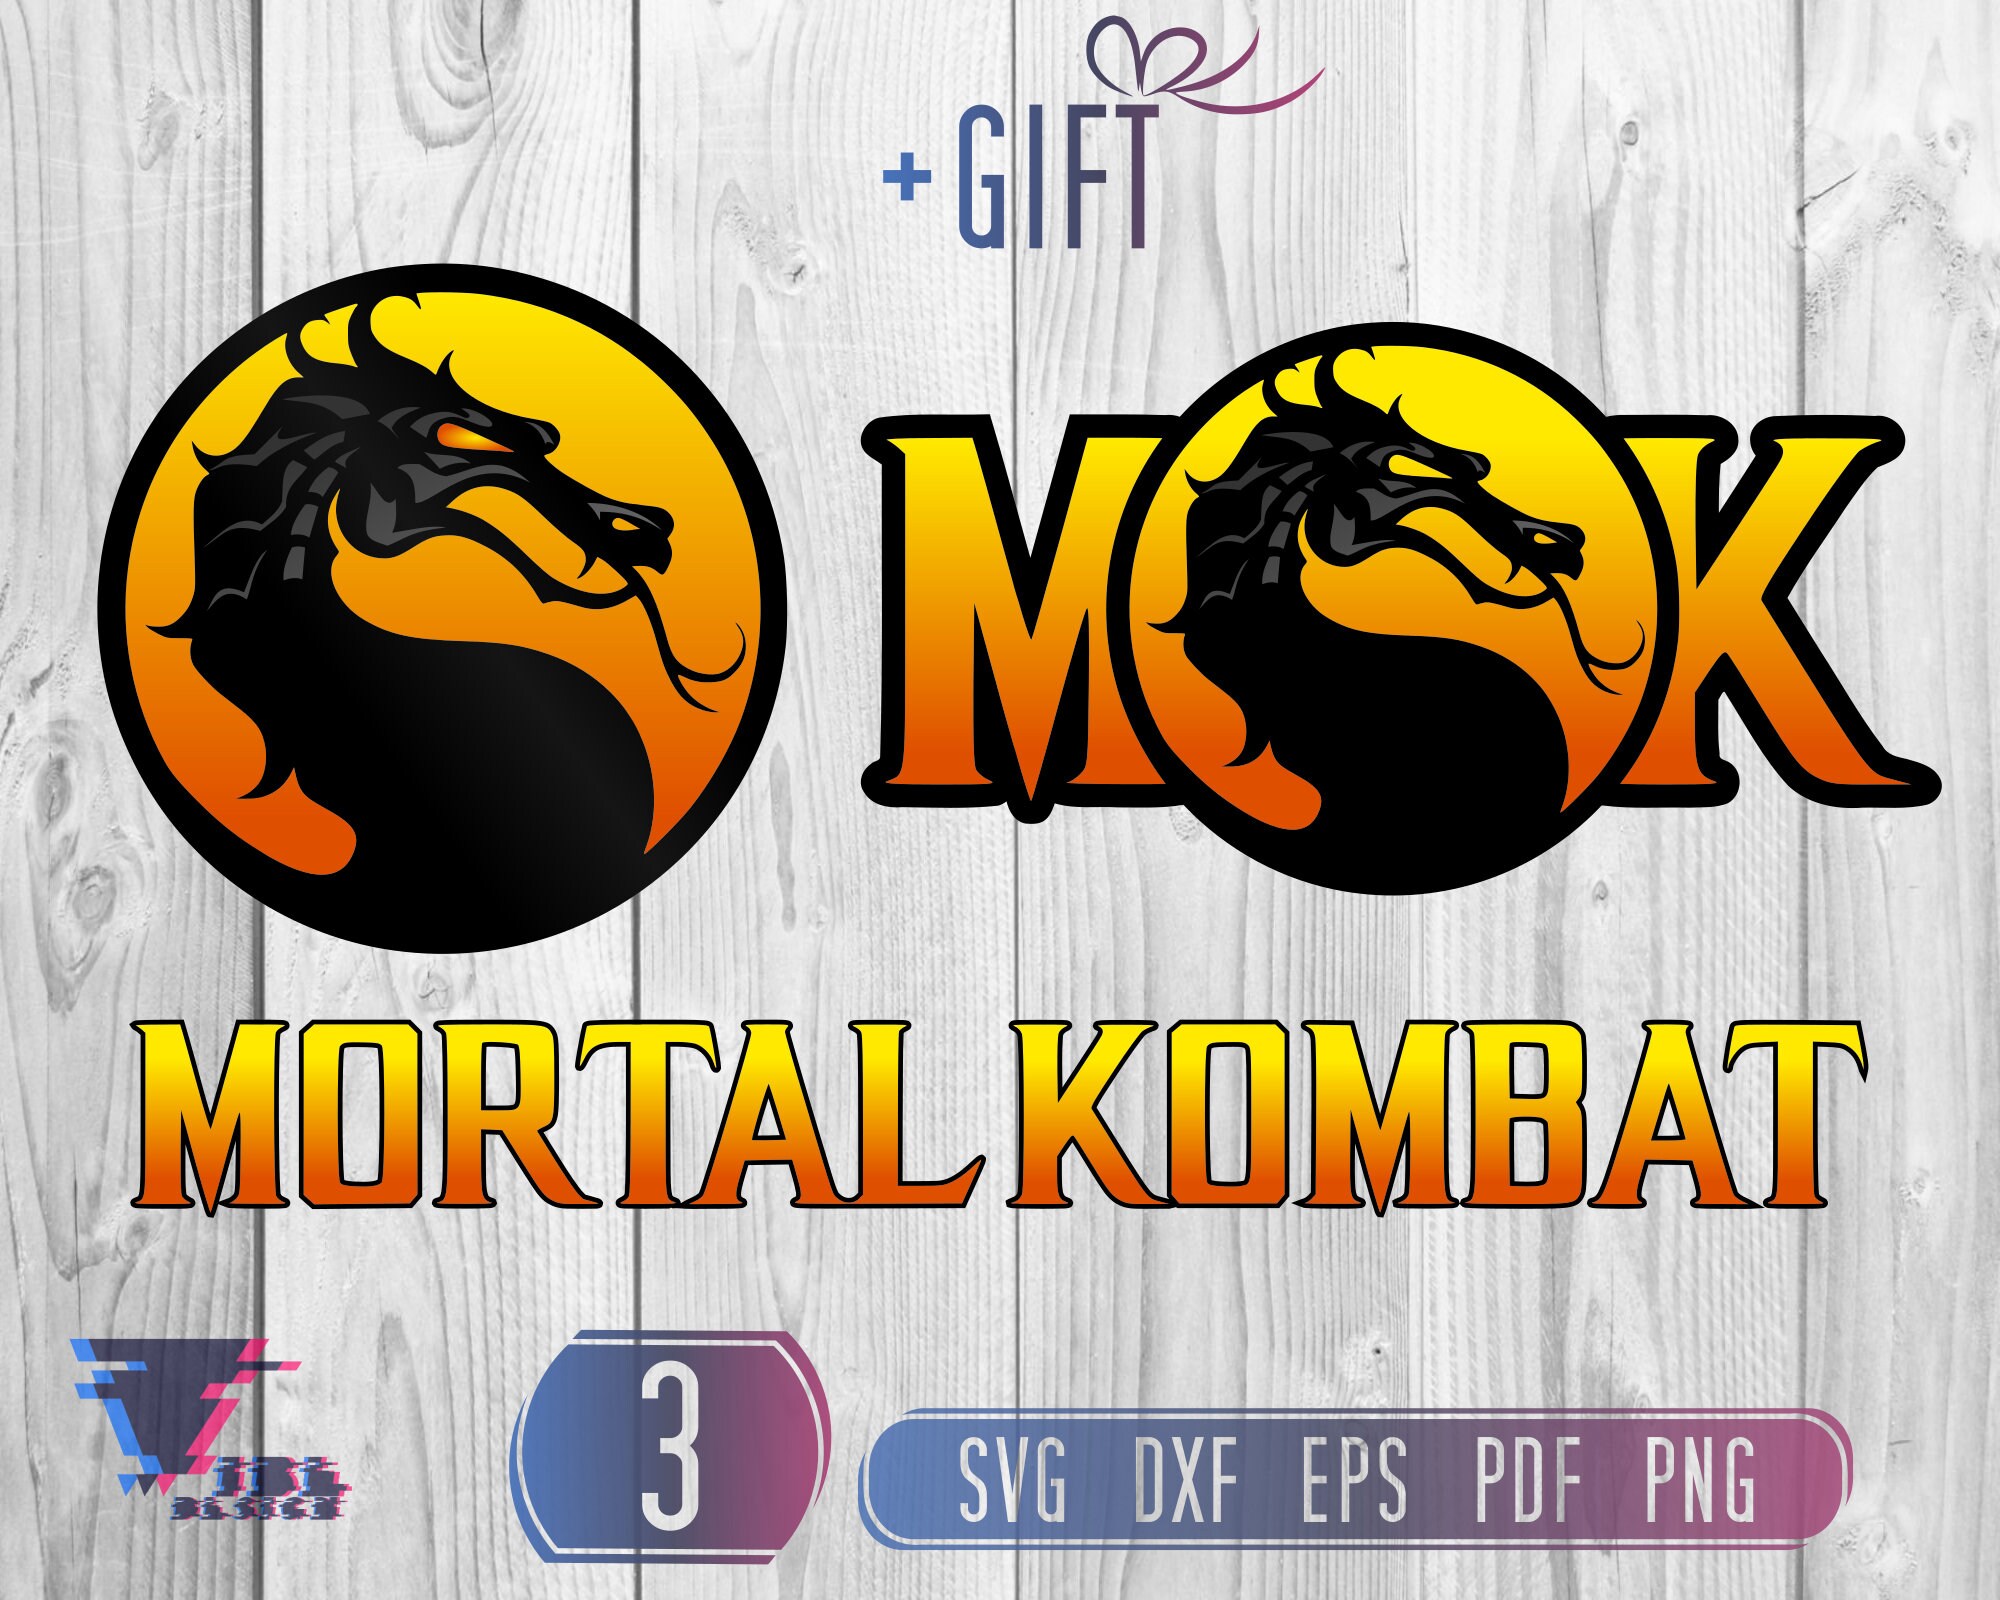 Mortal Kombat Clipart